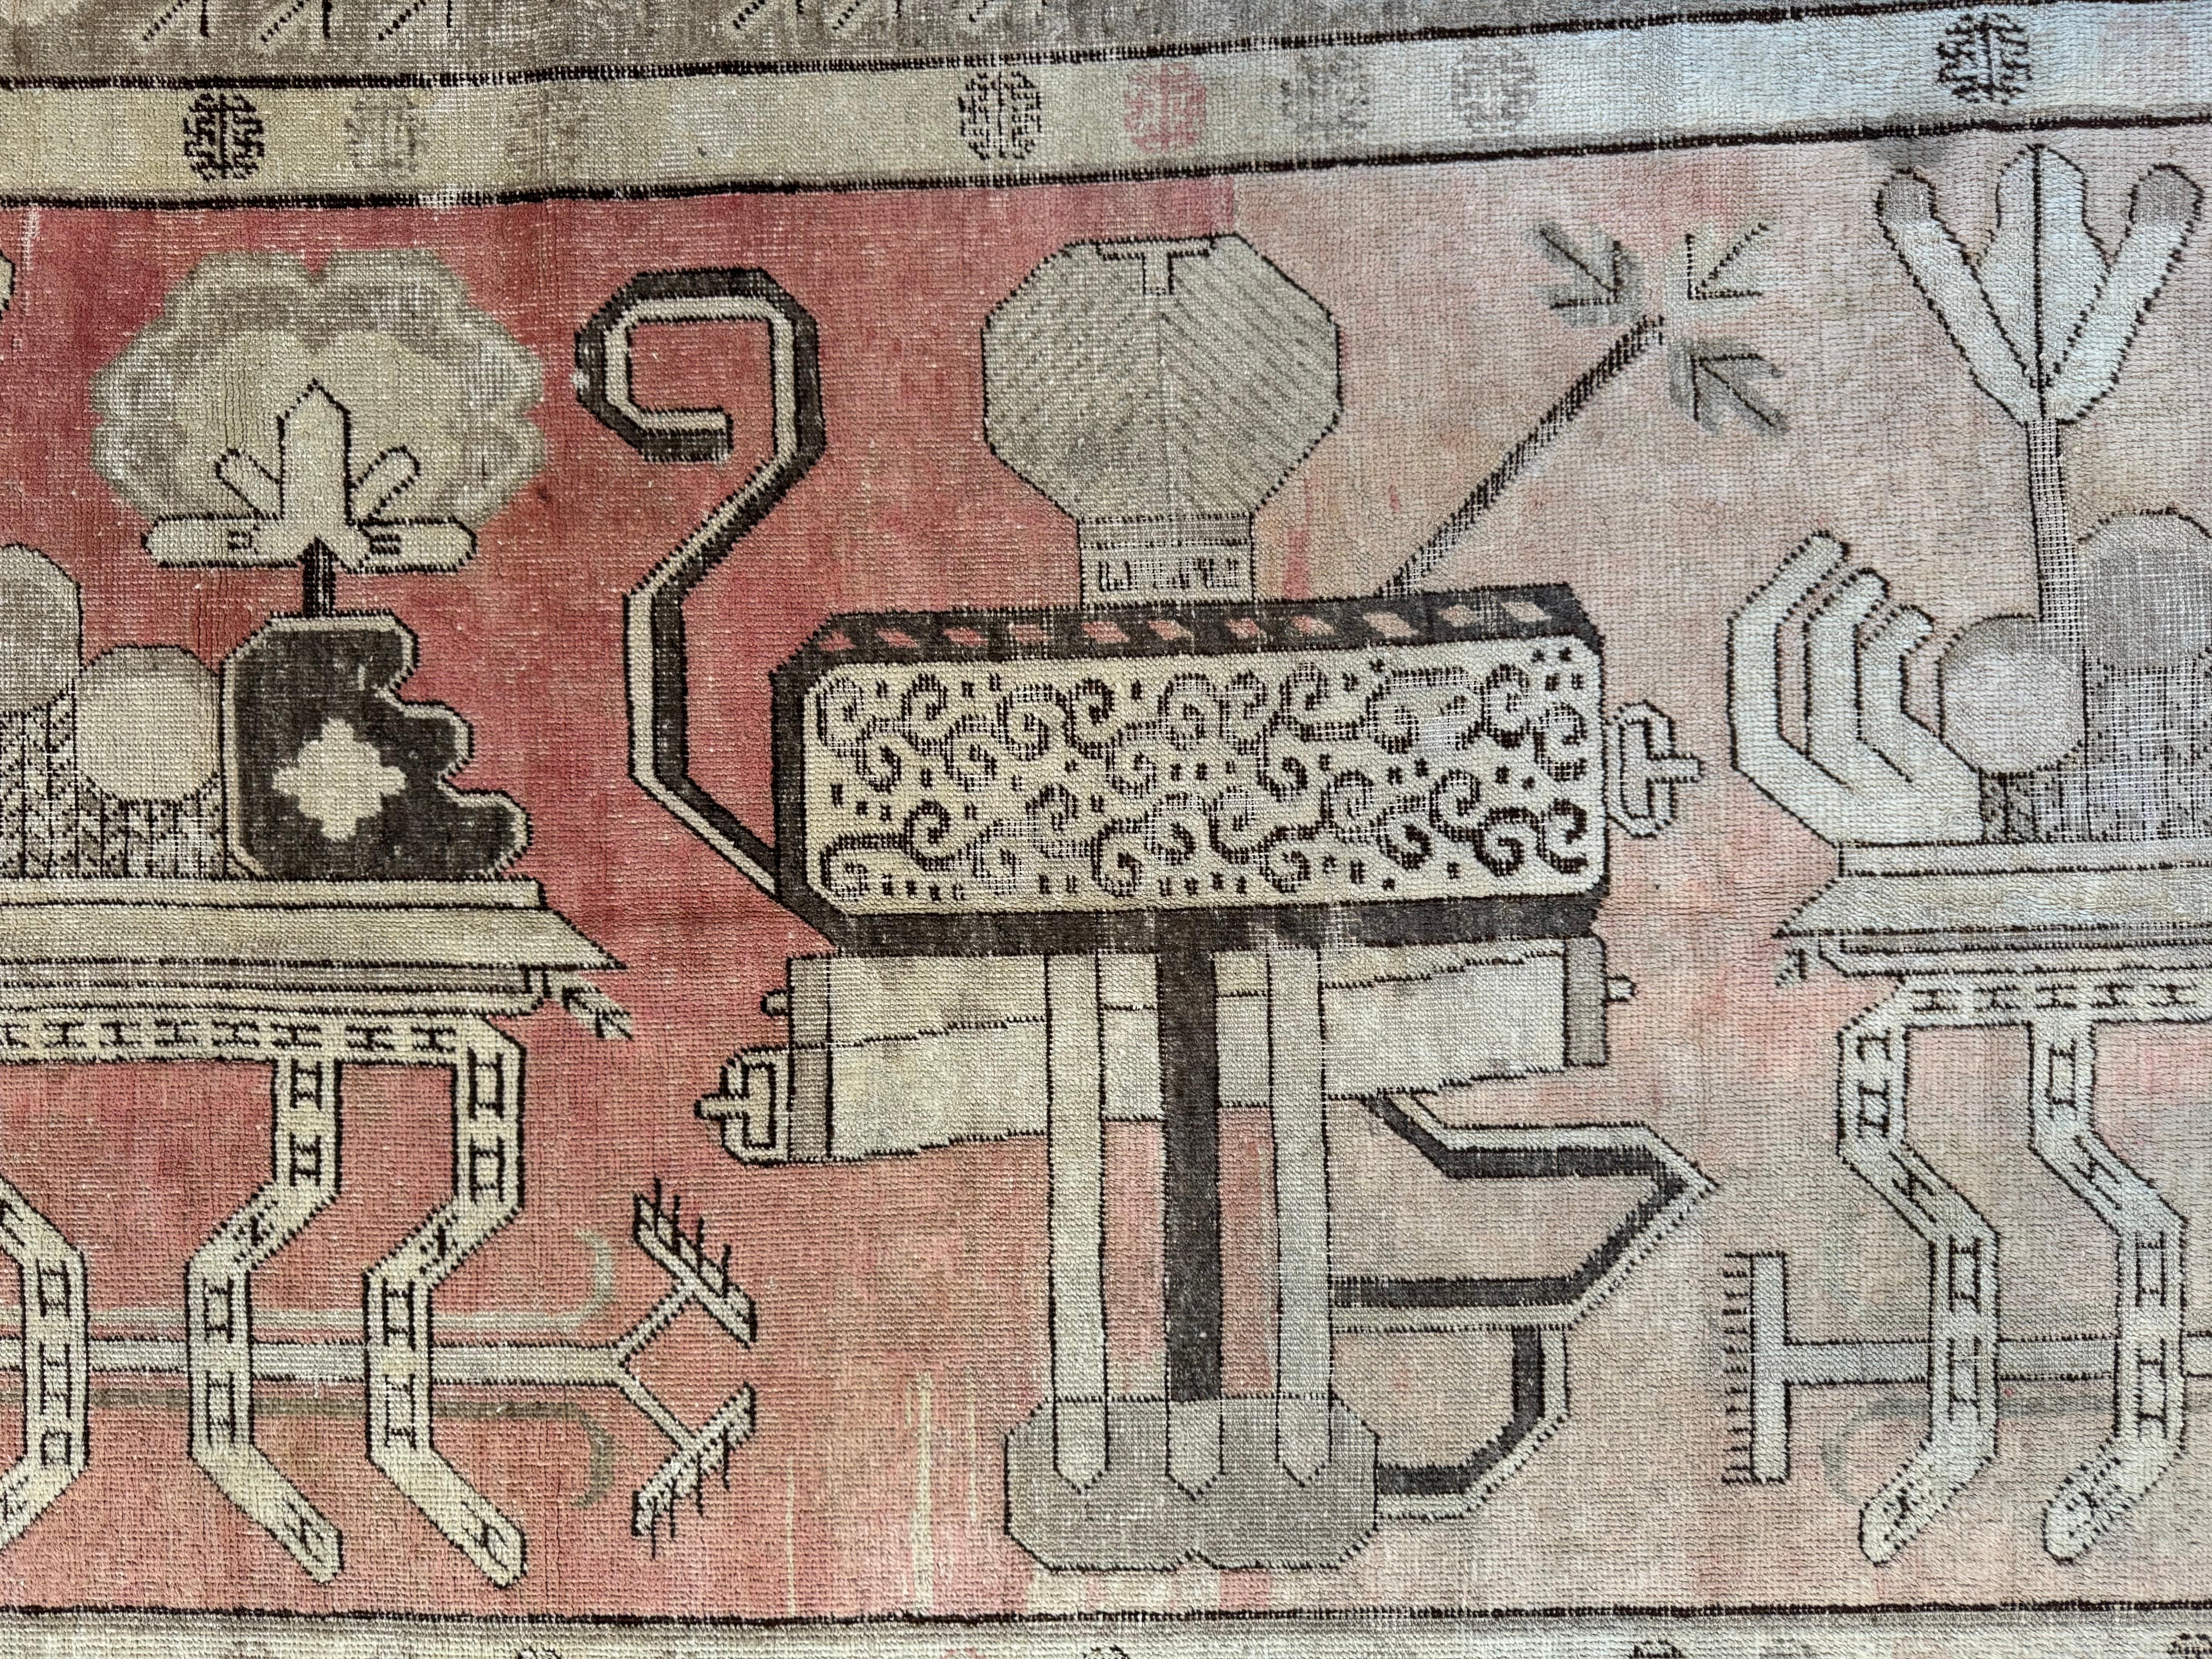 Découvrez l'allure vintage avec ce tapis Samarkand antique du XIXe siècle, d'une dimension de 8,10' x 5,1'. Son design captivant et ses tons chauds enrichissent toute maison AM Contemporary, trouvant un équilibre harmonieux entre le charme classique